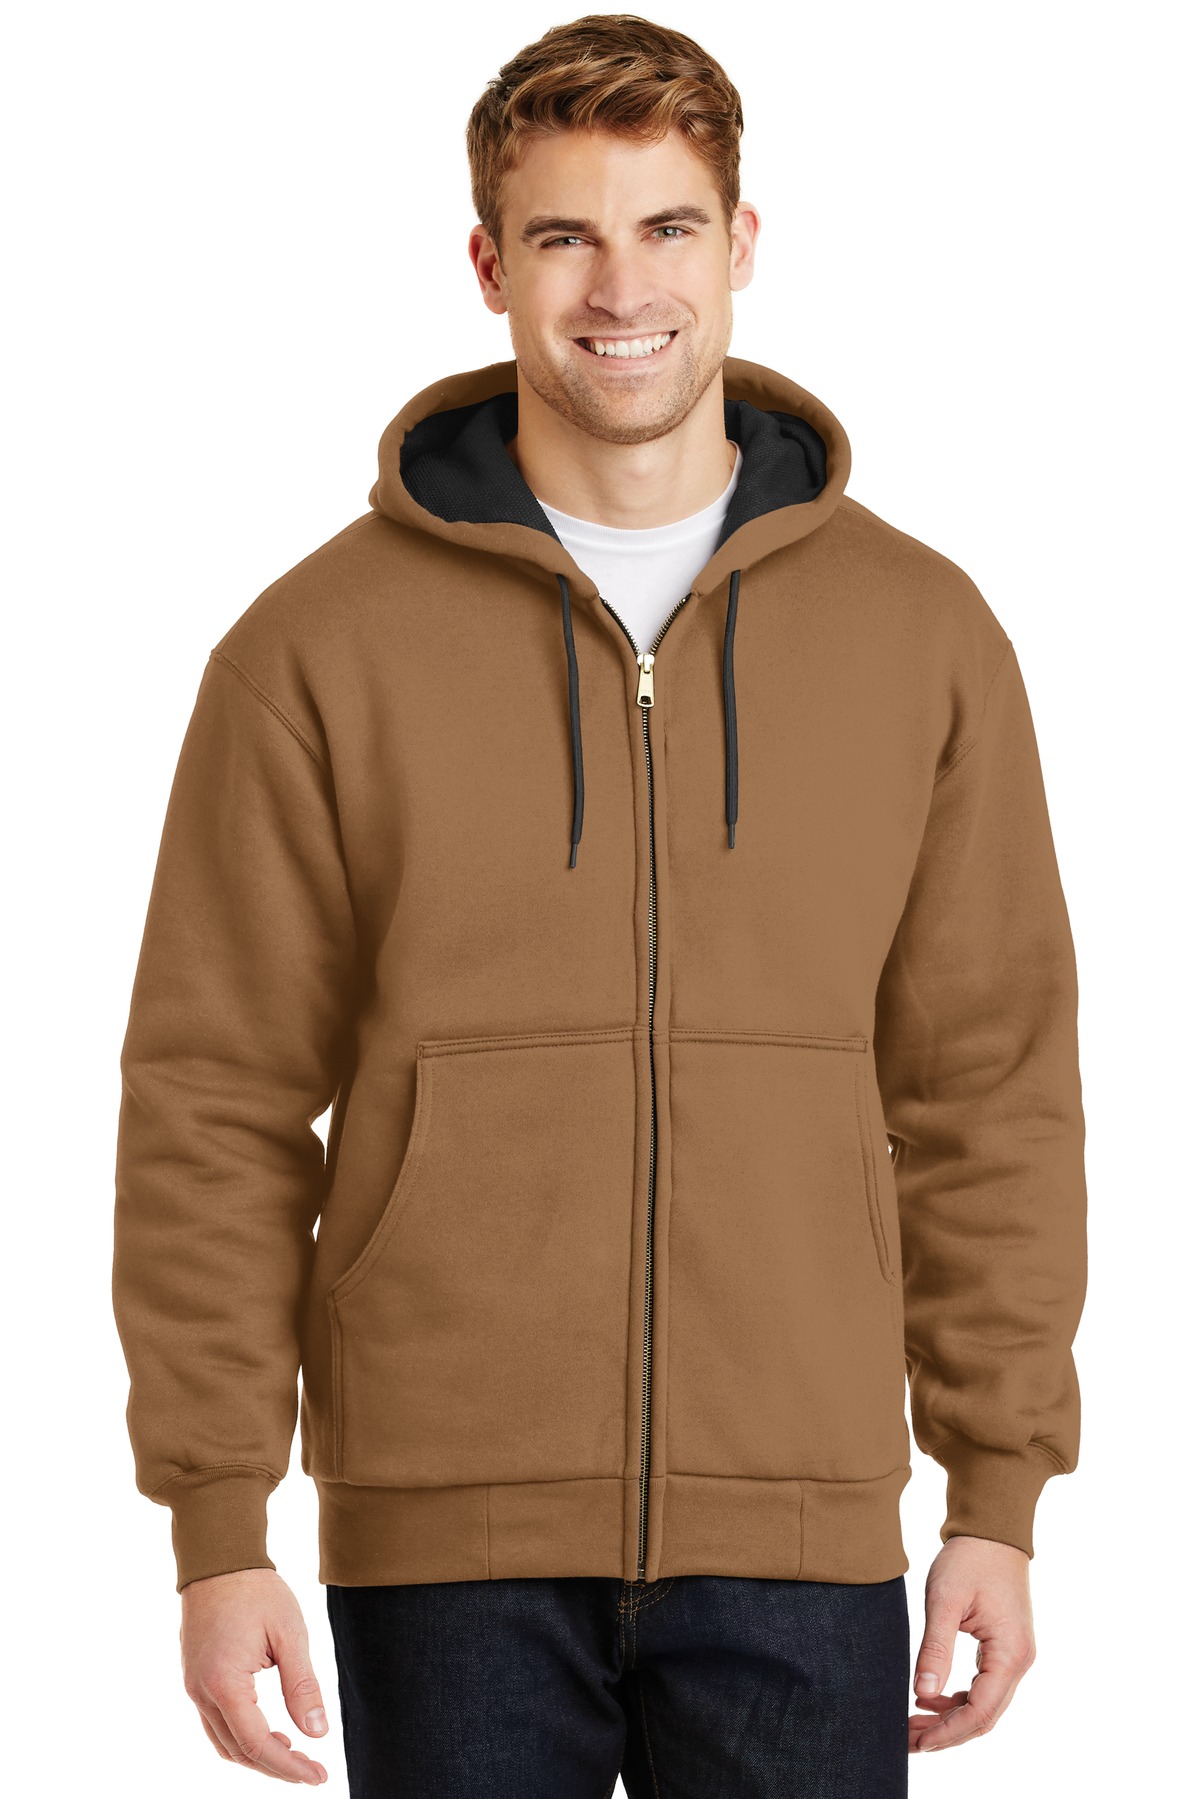 CornerStone - Heavyweight Full-Zip Hooded Sweatshirt with Thermal Lining-CornerStone